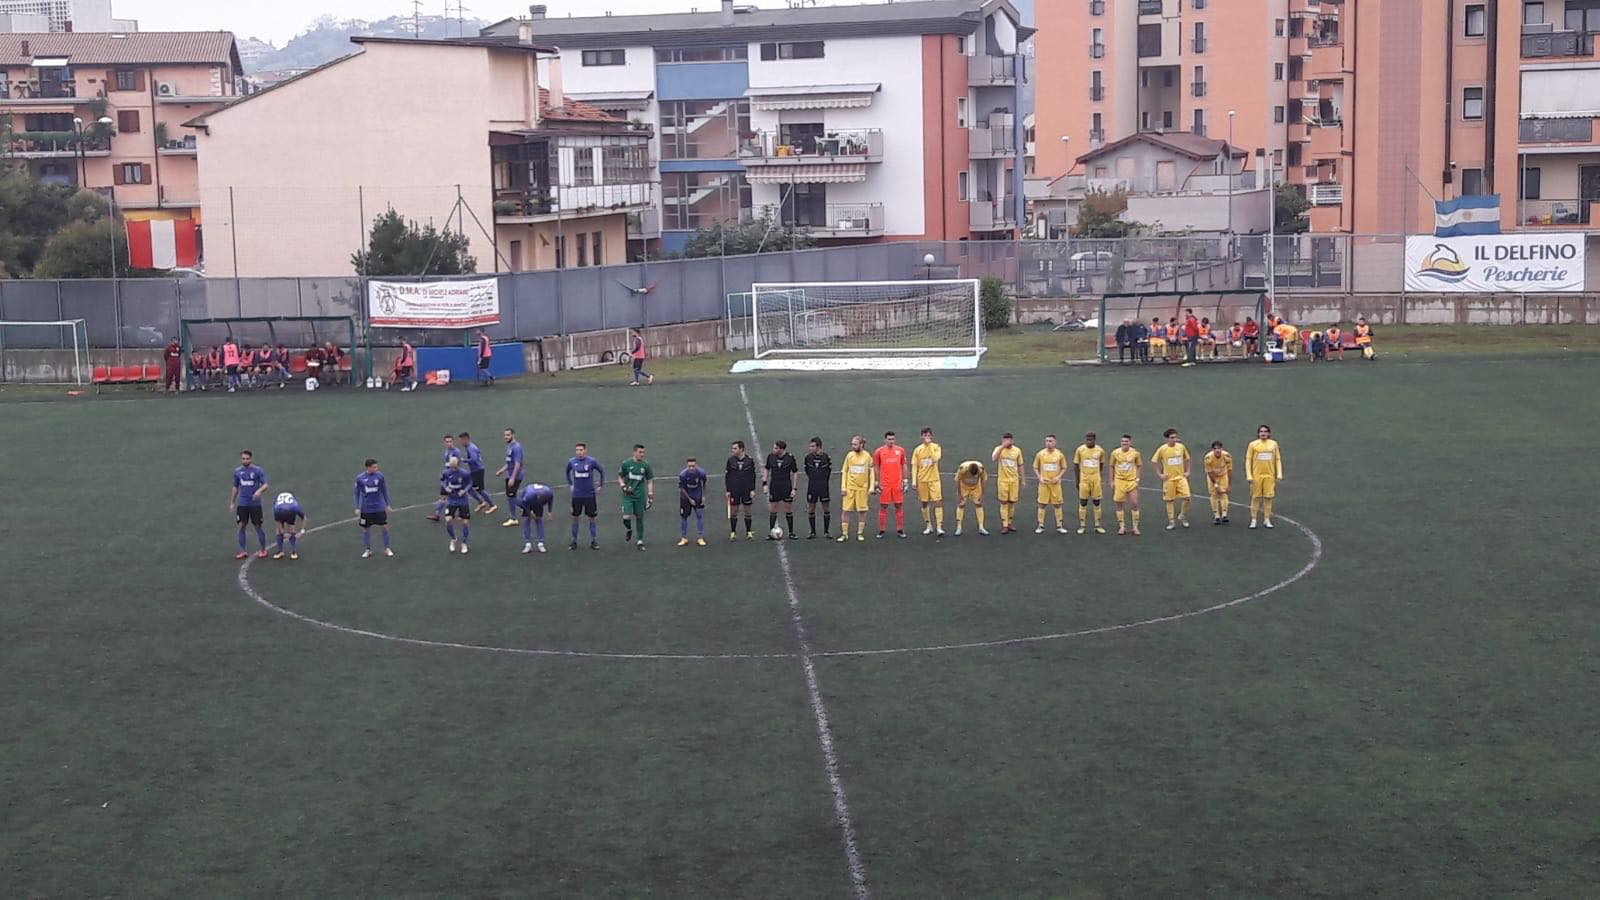 Calcio Eccellenza.Pareggio (2-2) e spettacolo, tra Delfino Flacco Porto e Sambuceto